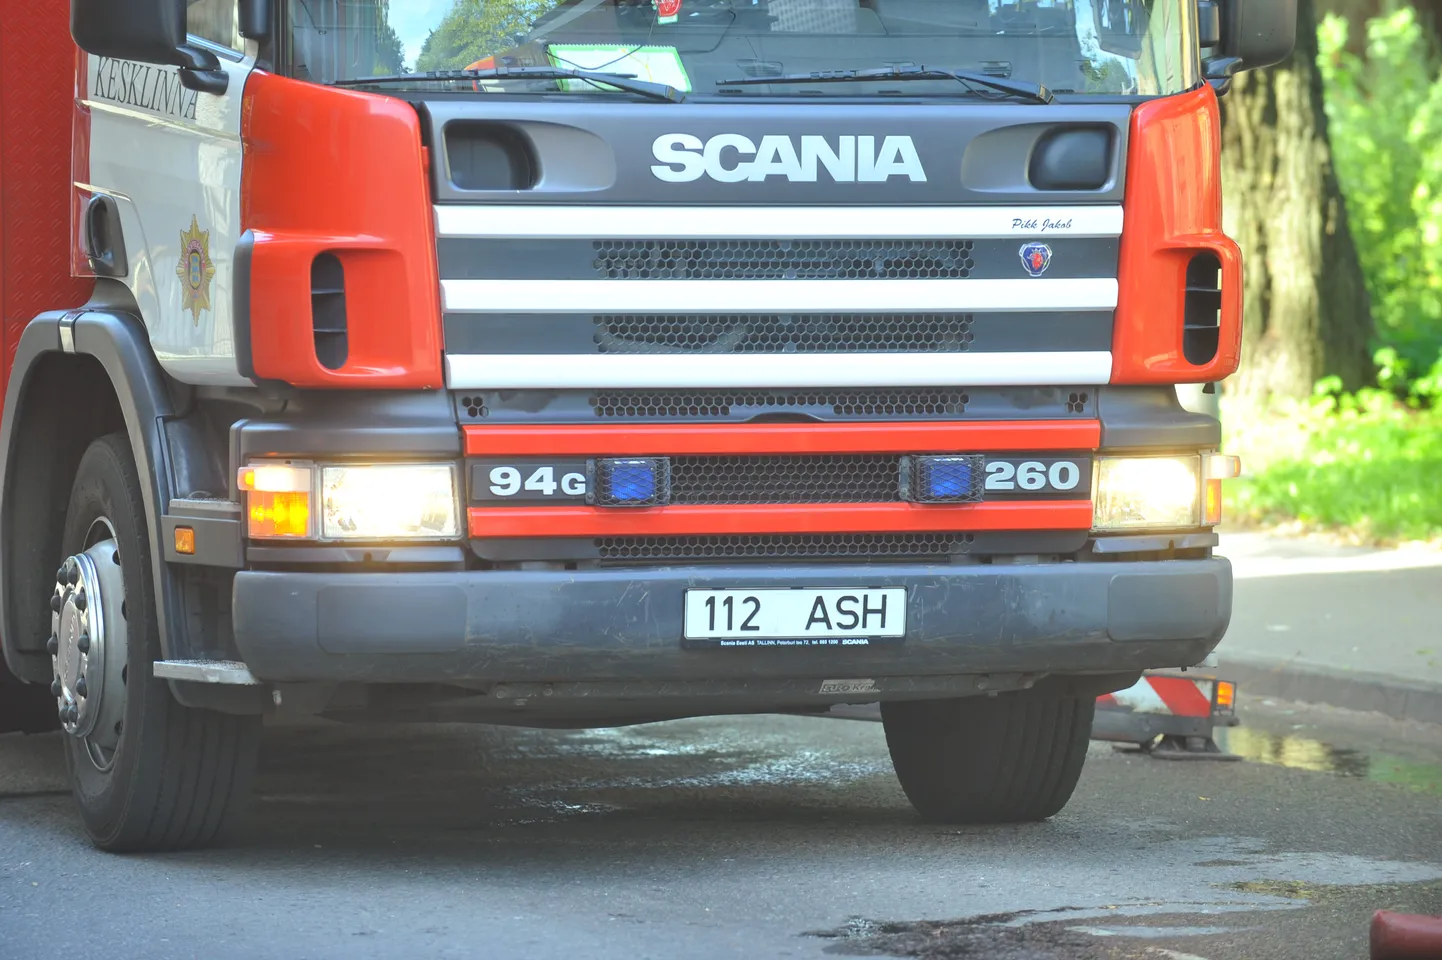 Nädalavahetusel oli Lõuna-Eestis kolm tulekahjut.